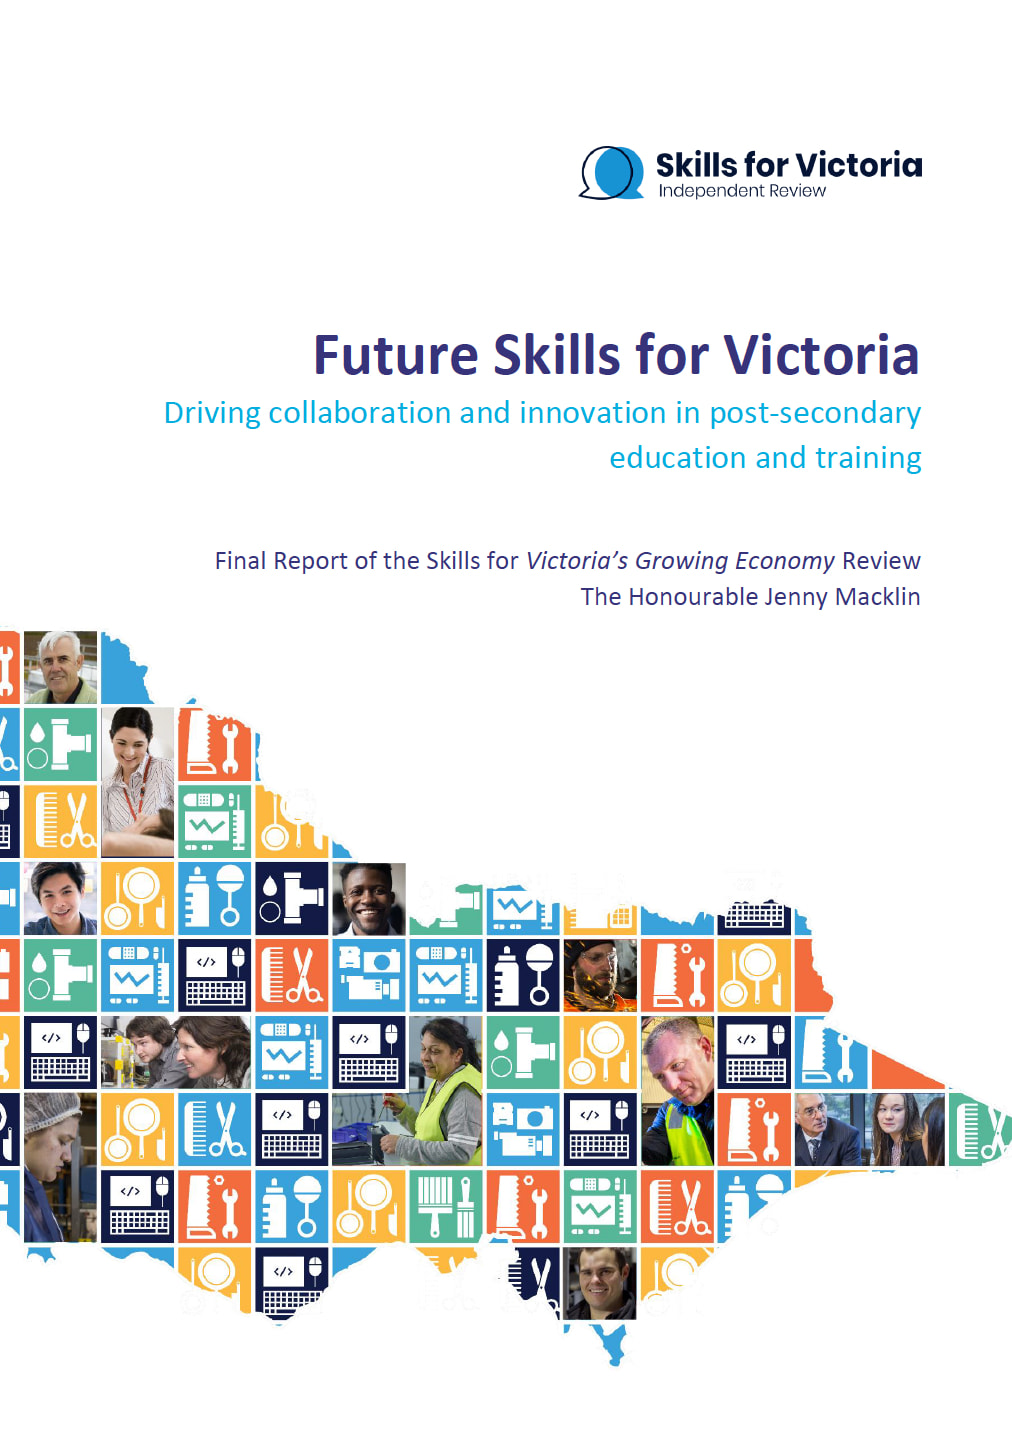 Skills for Victoria report